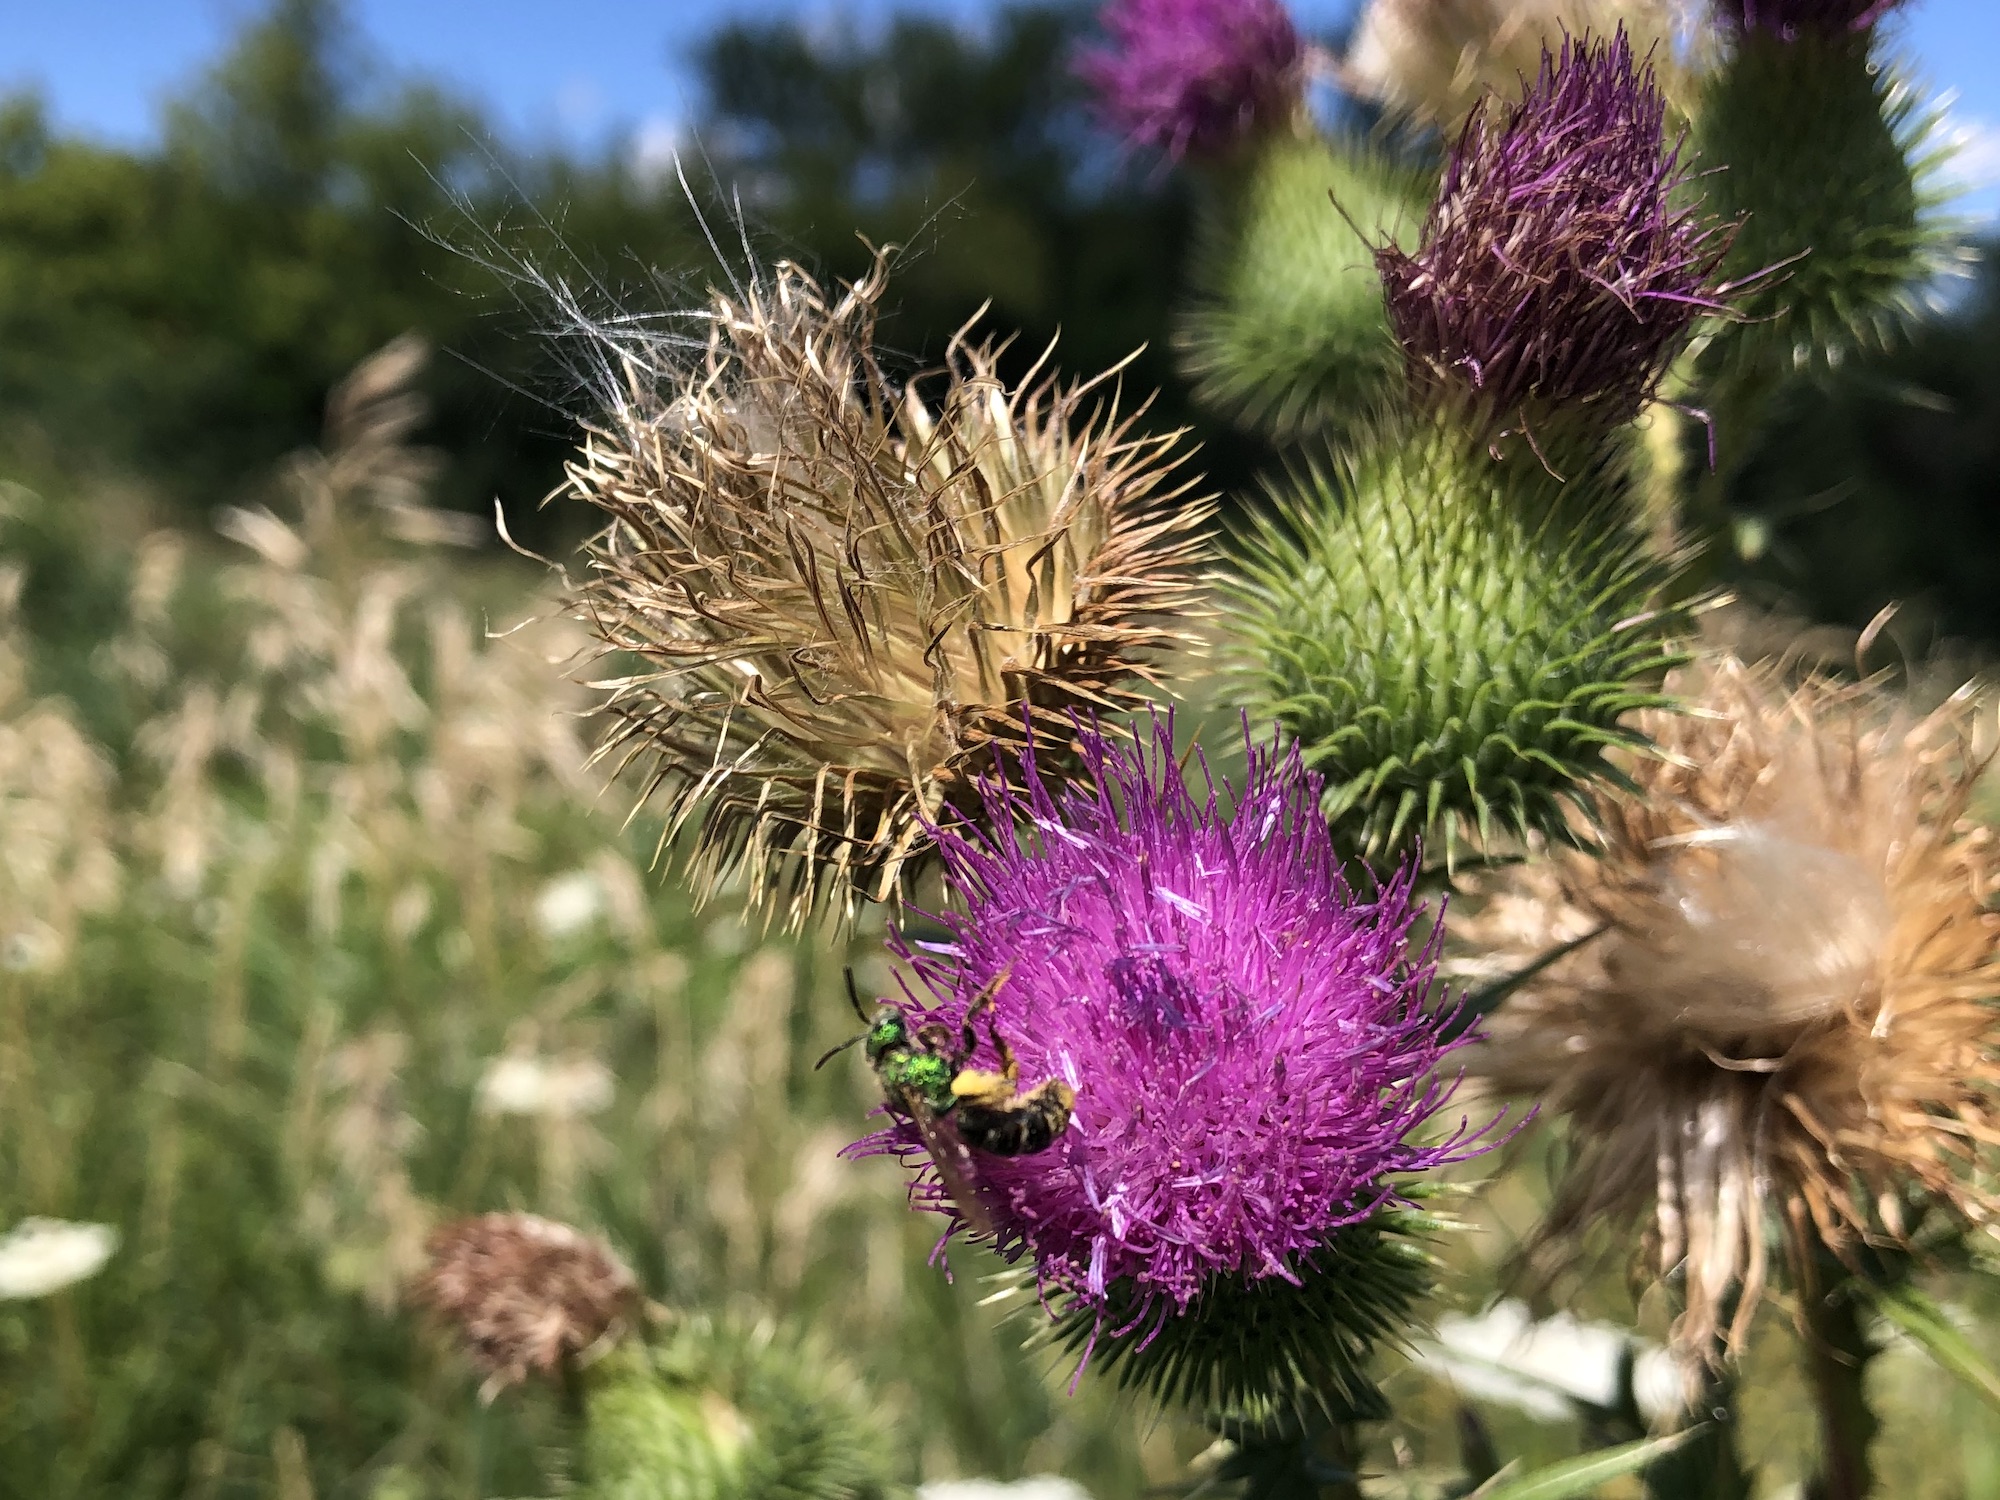 Sweat bee on Bull Thistle in field near the Westside Community Farmer's Market on University Row in Madison, Wisconsin on July 30, 2022.